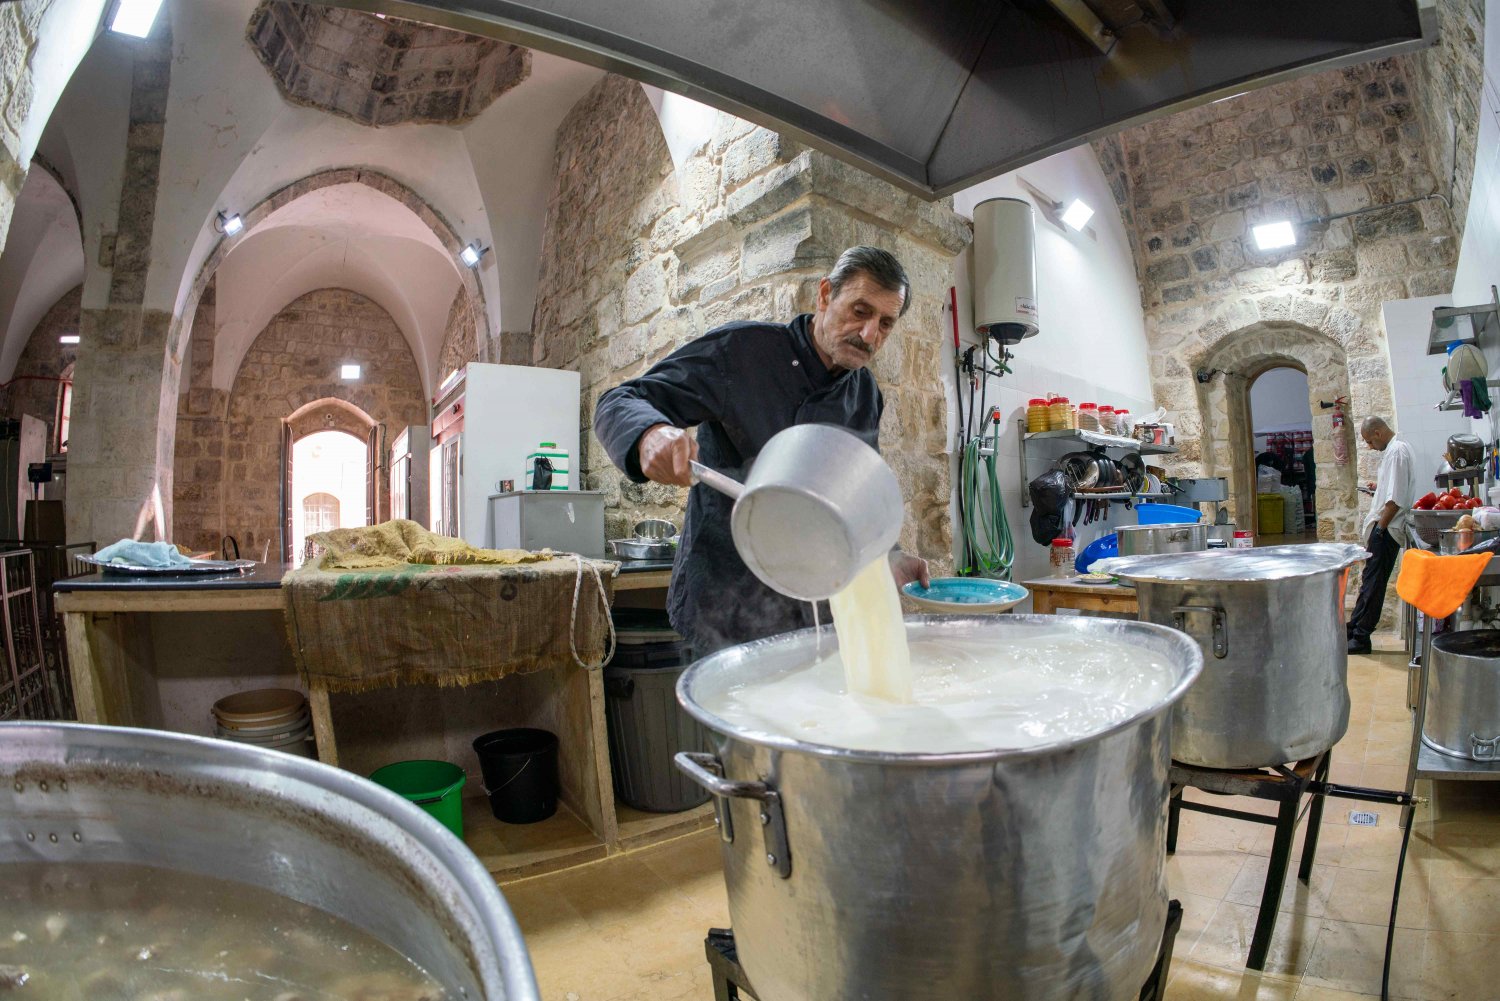 Samir Jaber stirs the yogurt sauce for mansaf in the Khaski Sultan soup kitchen in the Old City of Jerusalem